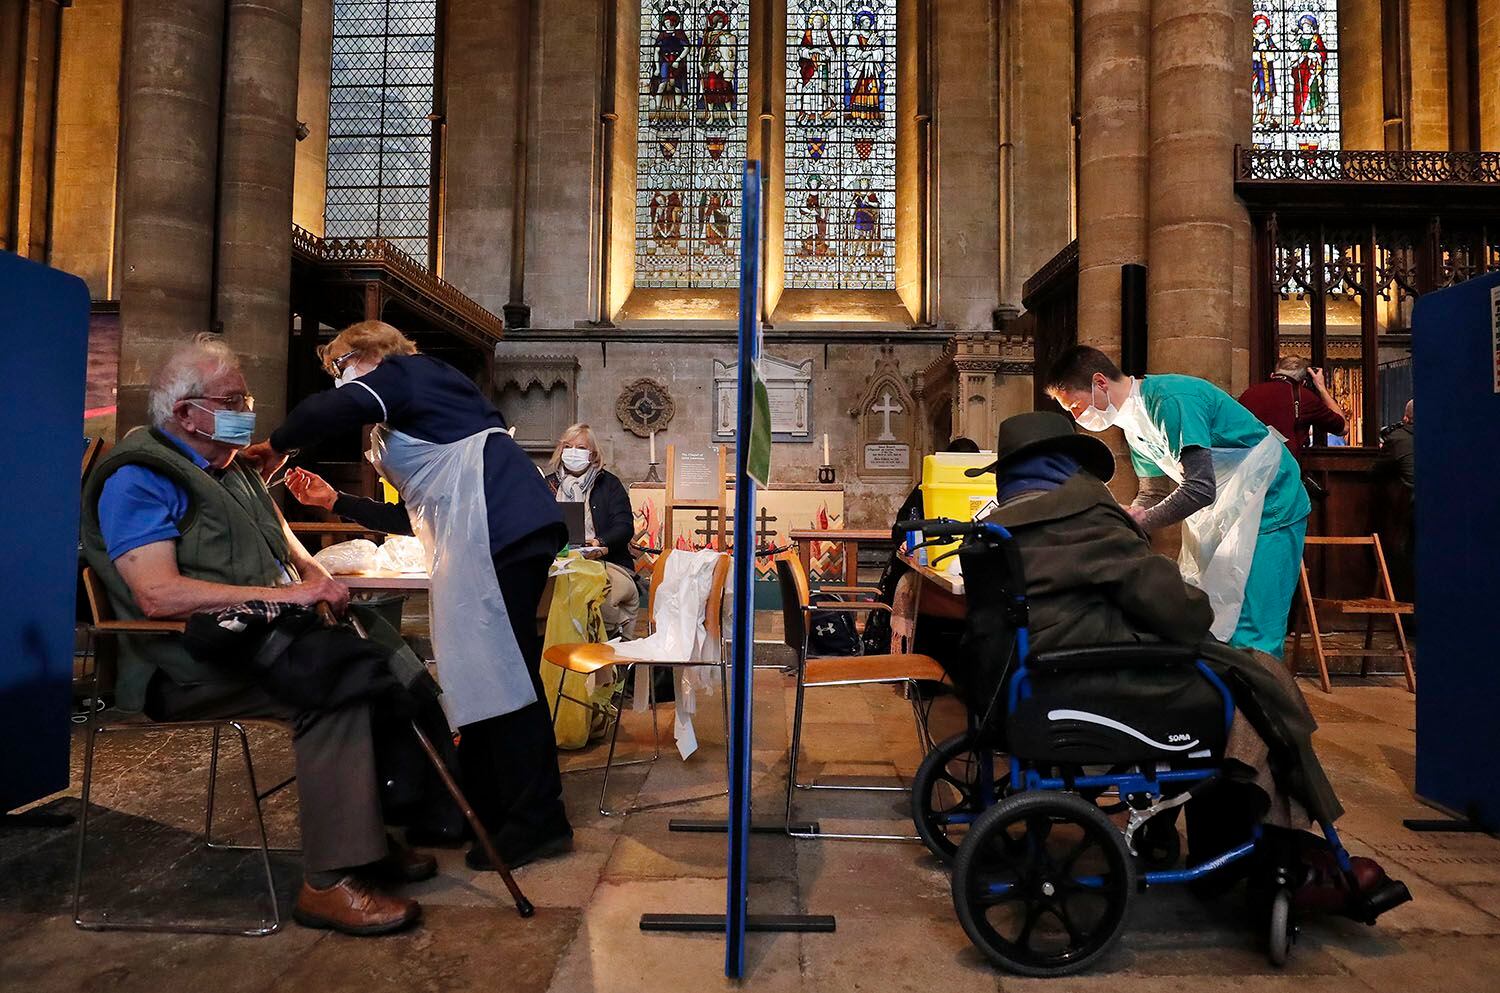 Pacientes de edad avanzada son vacunados contra el COVID-19 en la Catedral de Salisbury, Inglaterra, el 20 de enero del 2021. (AP Photo/Frank Augstein)